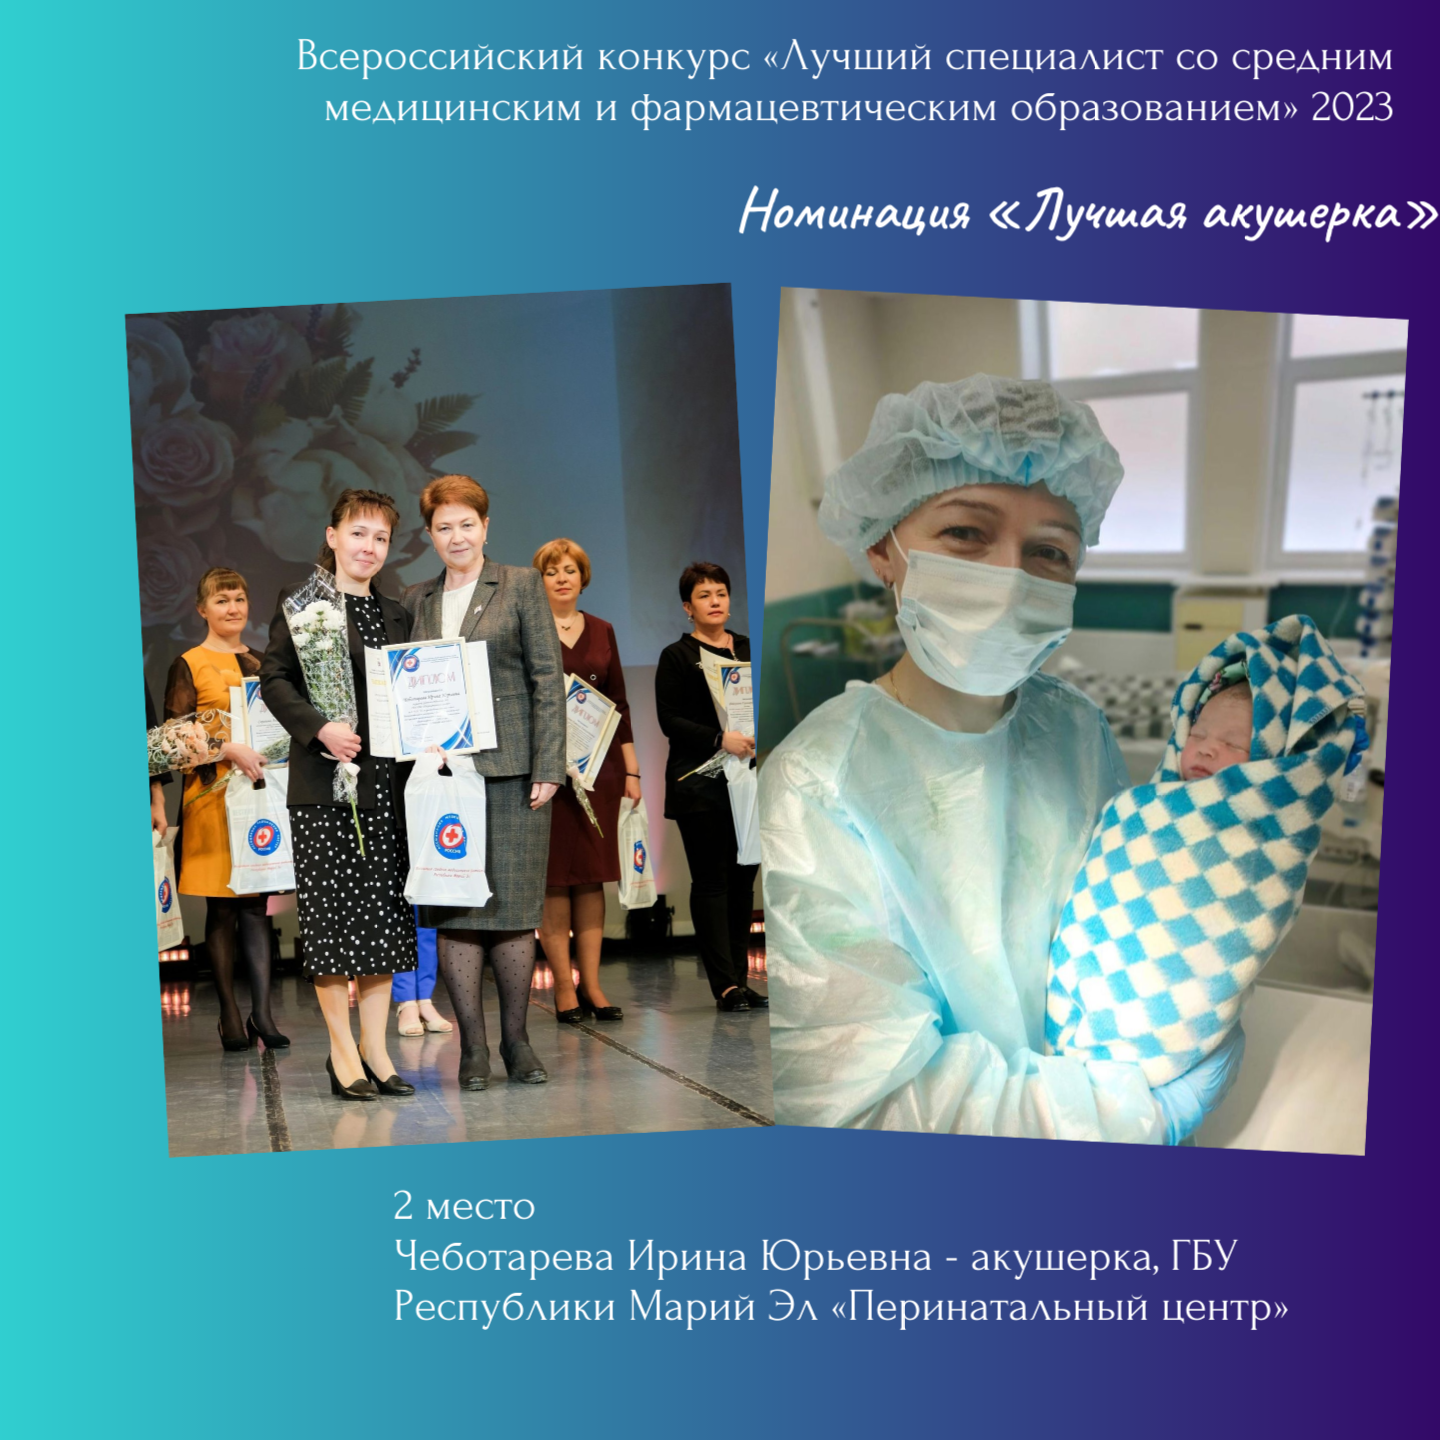 В Москве наградили лучших специалистов сестринского дела